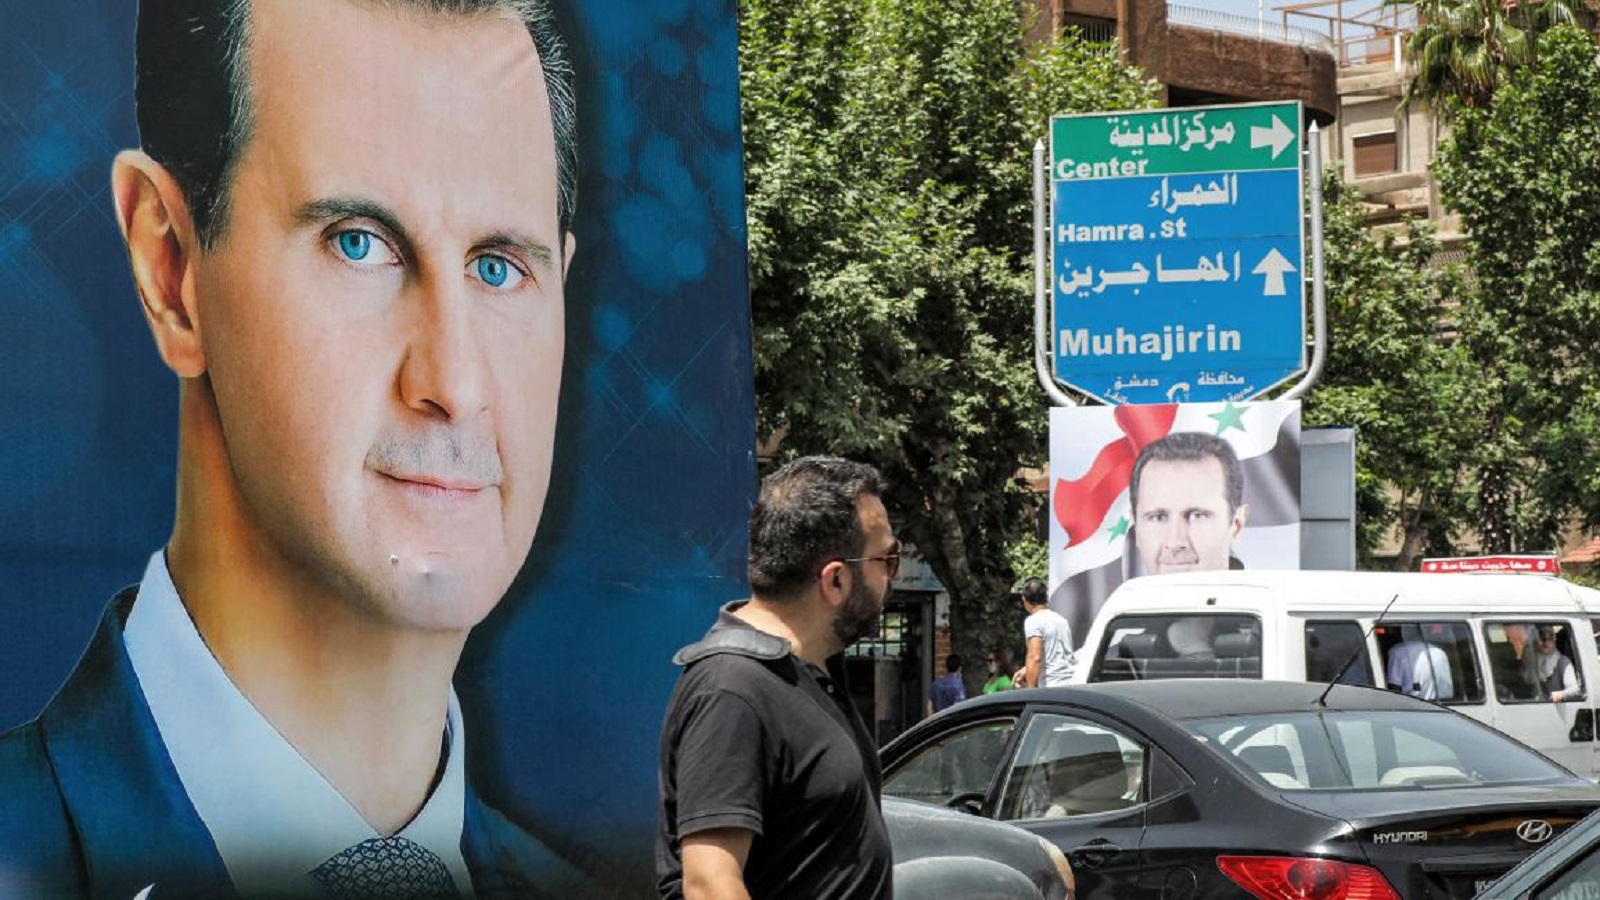 يوم ديرالزور الانتخابي:عرس للتشبيح على السوريين